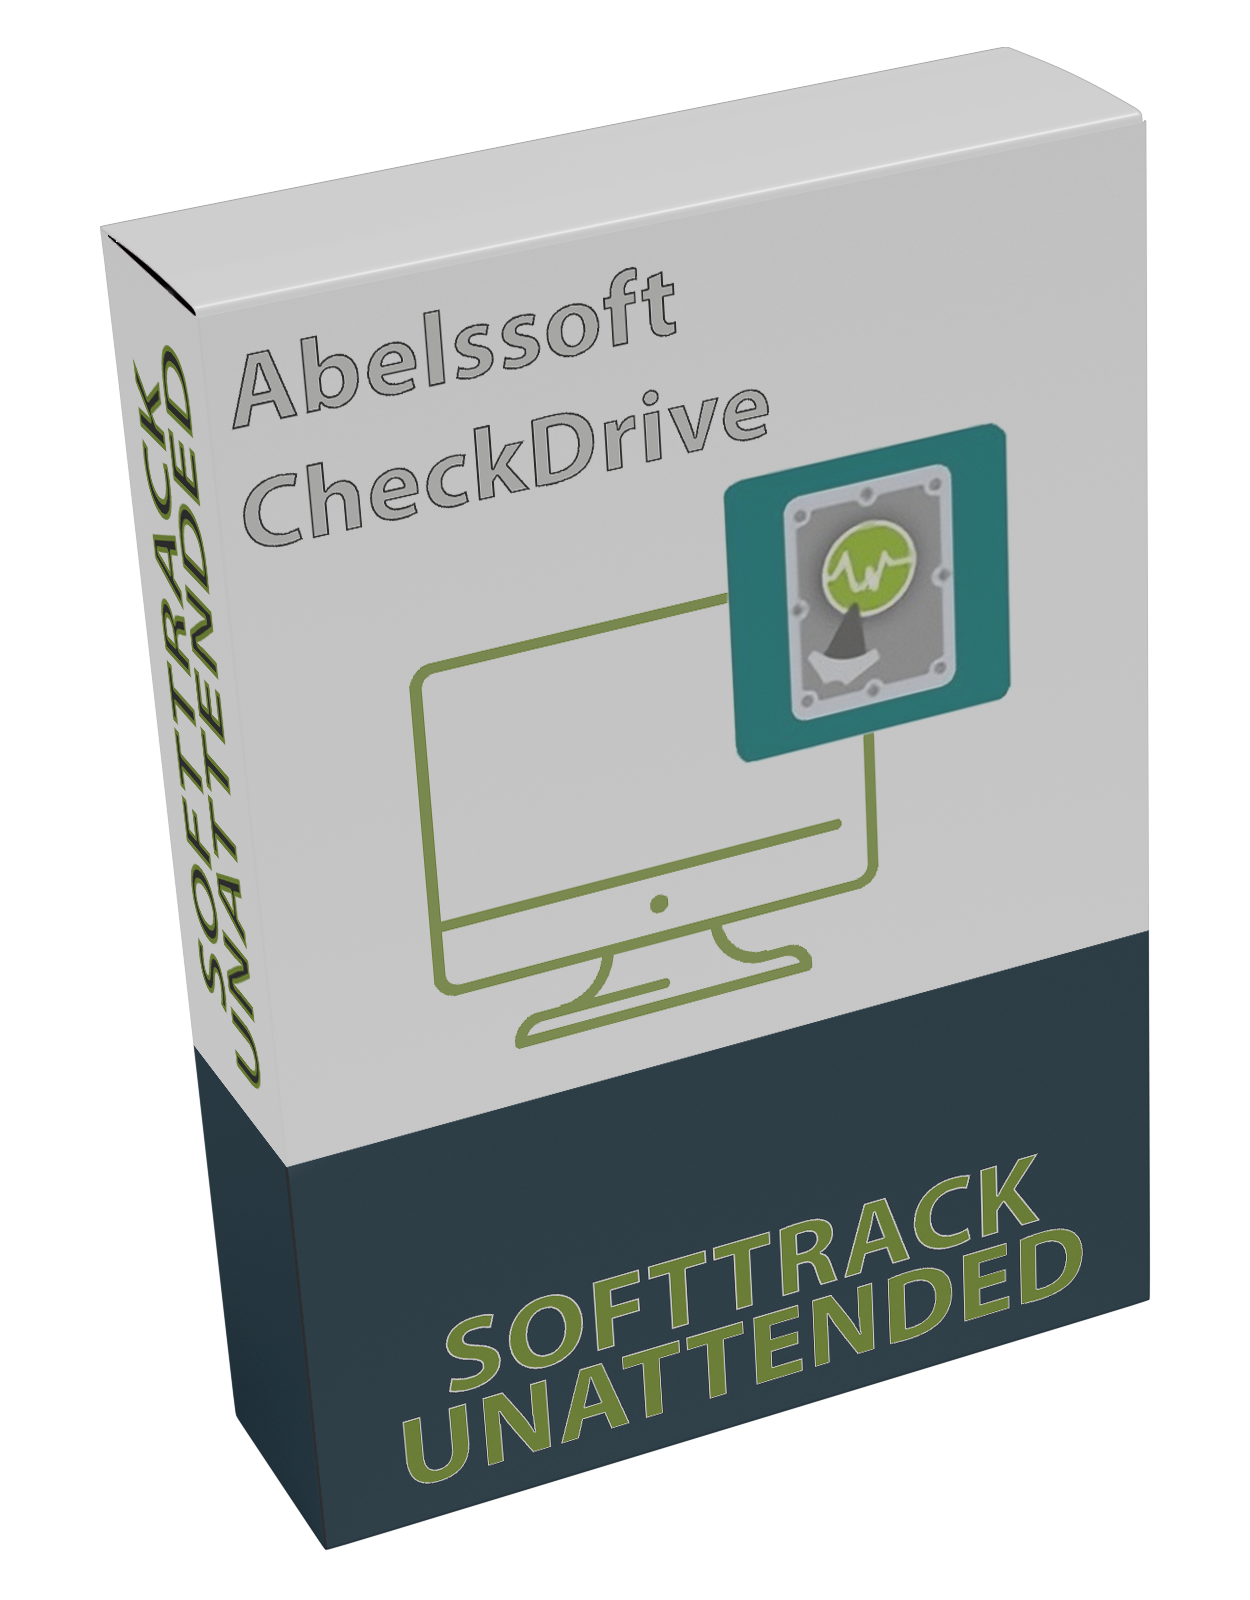 Abelssoft CheckDrive 2022 v4.01 UNATTENDED